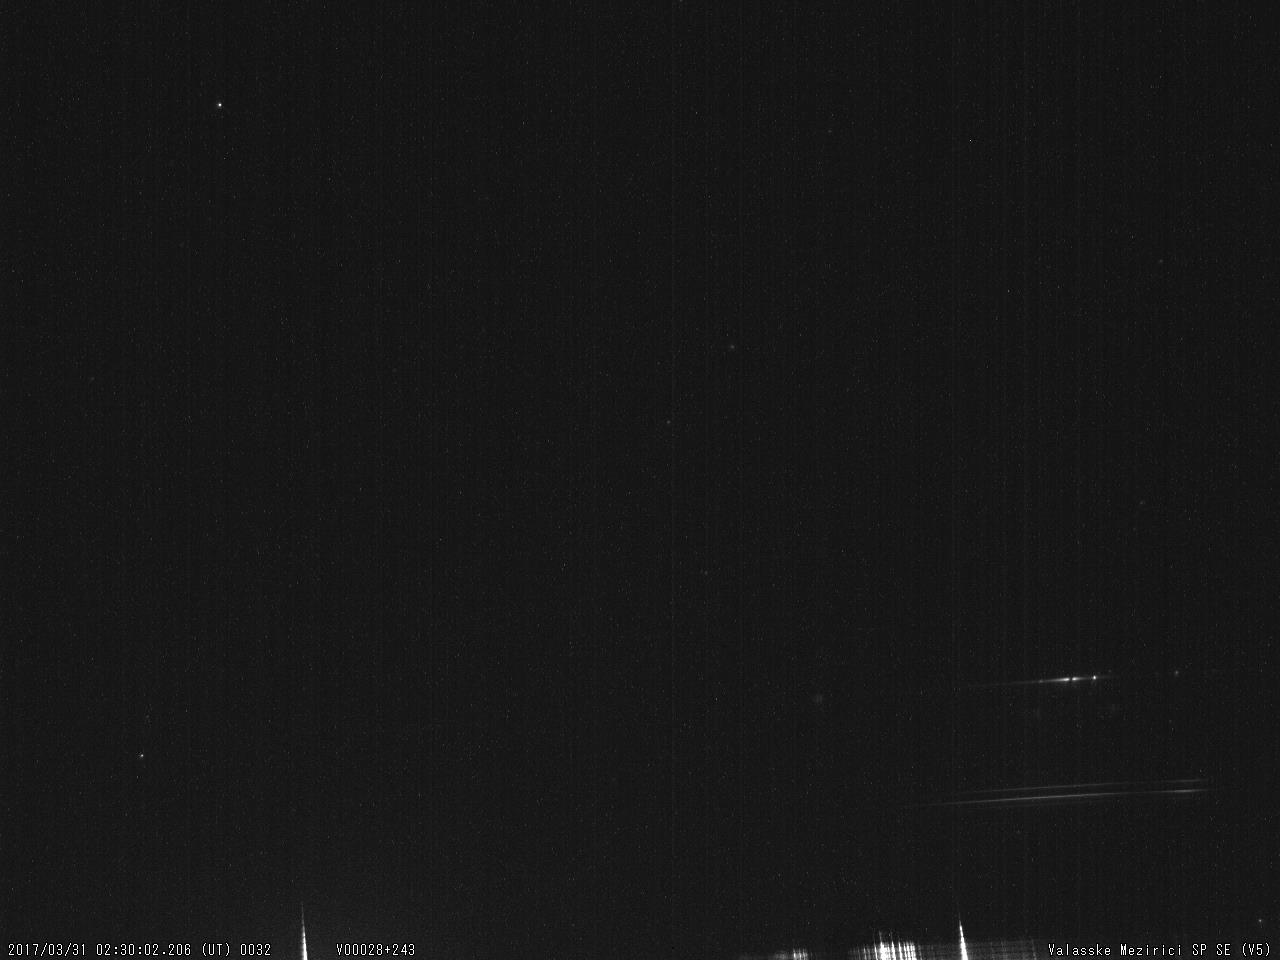 Obr. 12: Spektrum jasného meteoru 20170331_023002, spektrograf SPSE V5. Autor: Hvězdárna Valašské Meziříčí